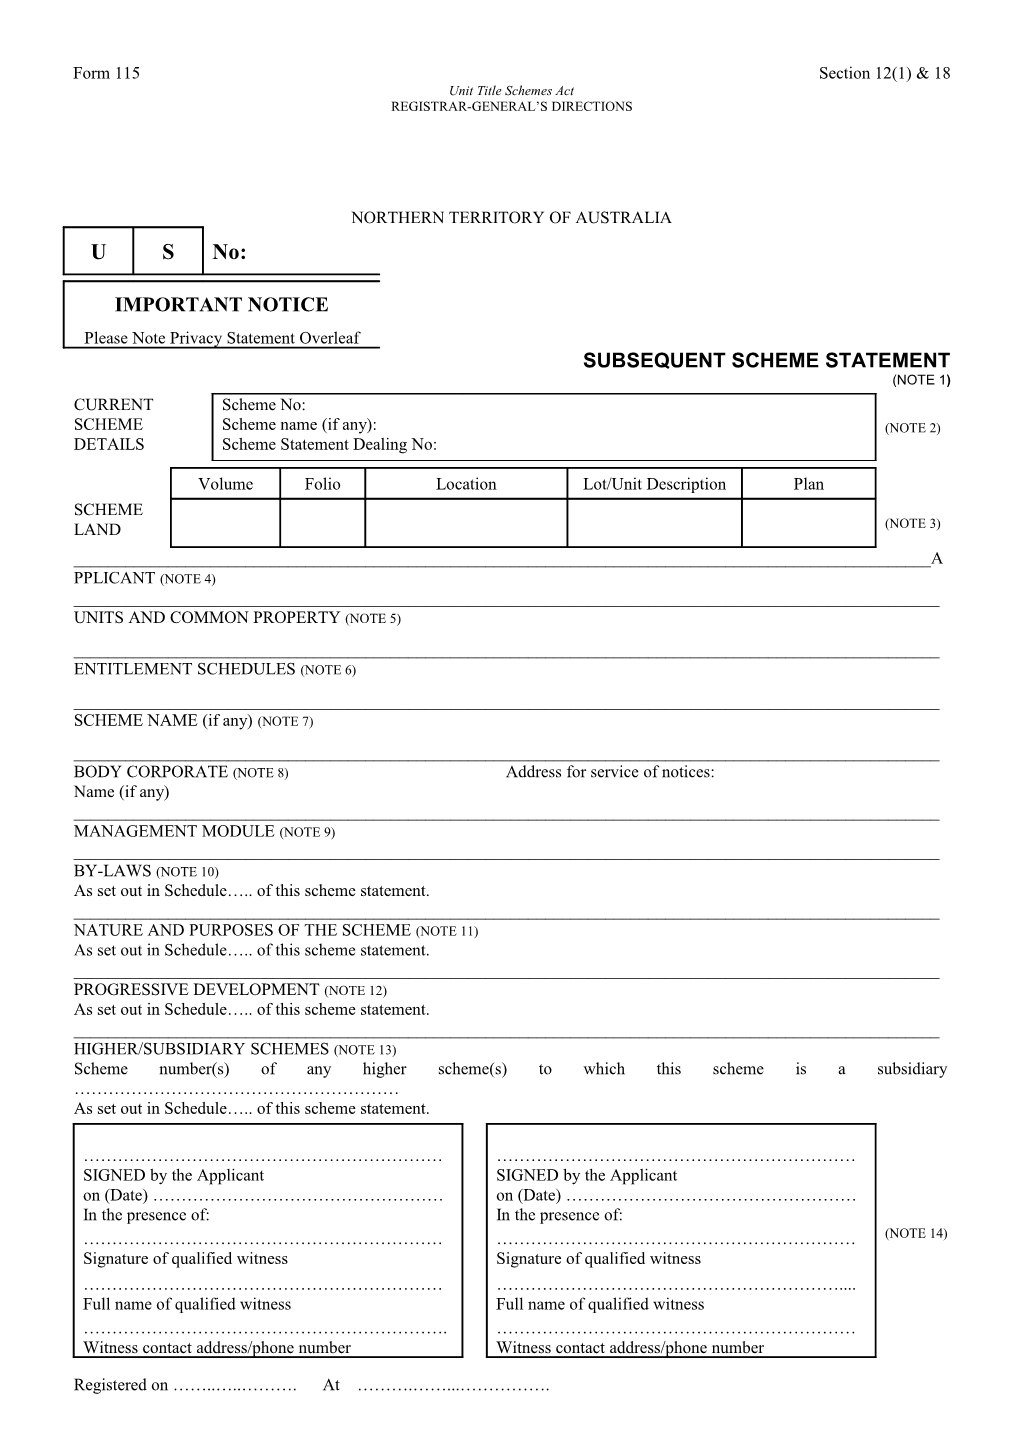 Form No. 115 - Subsequent Scheme Statement